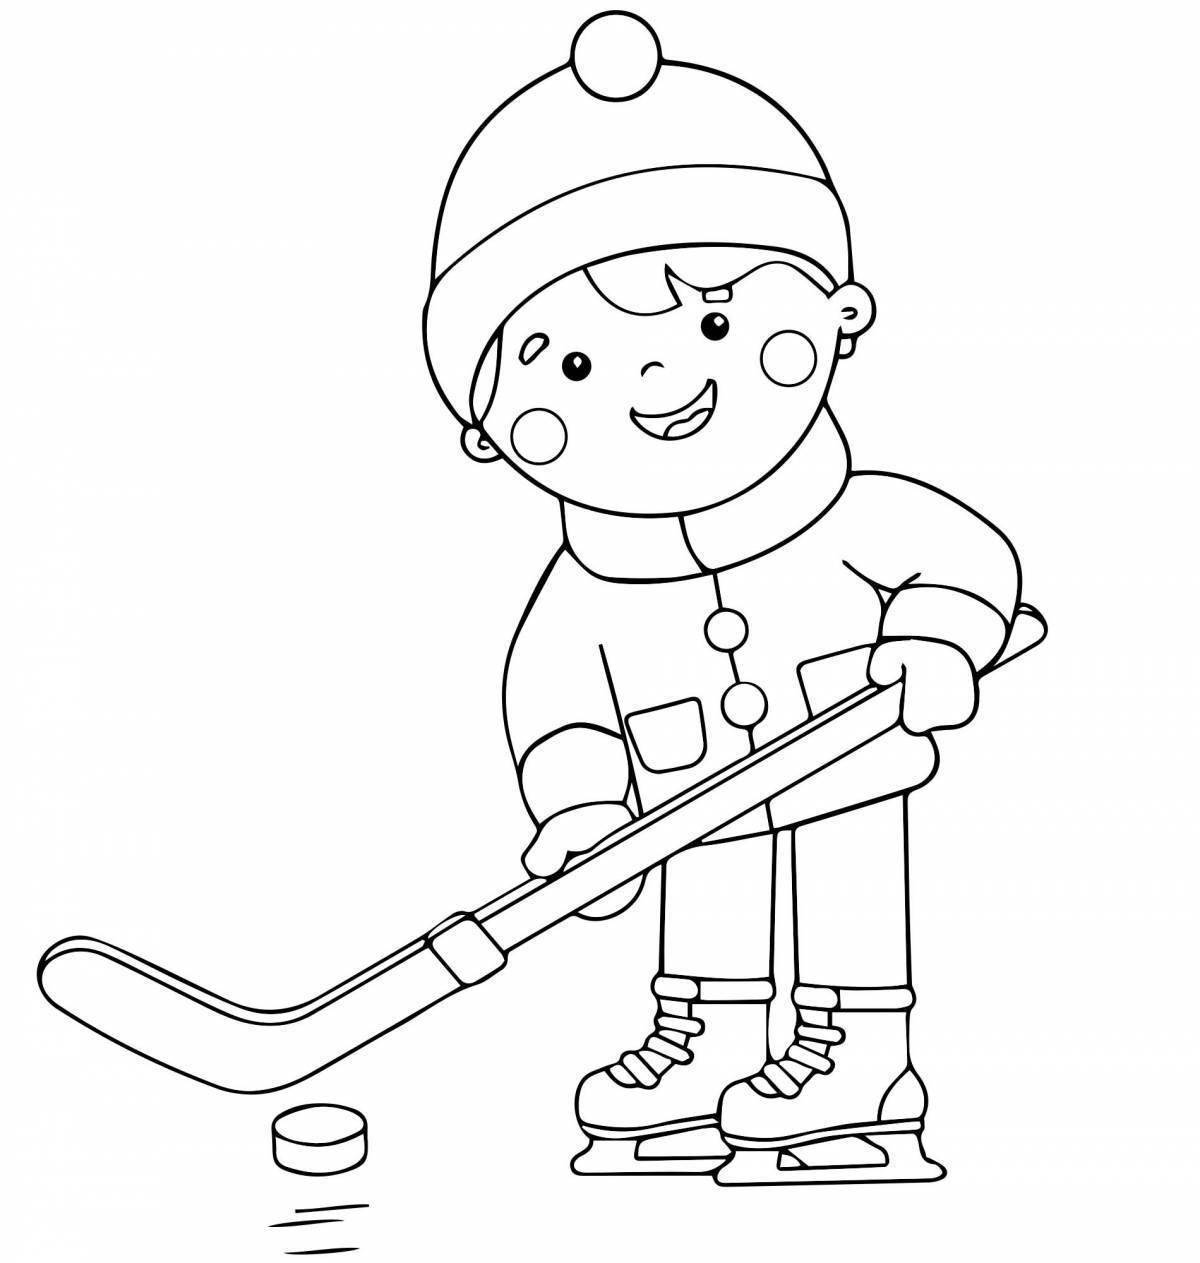 Замечательная картинка о зимних видах спорта для детей в детском саду